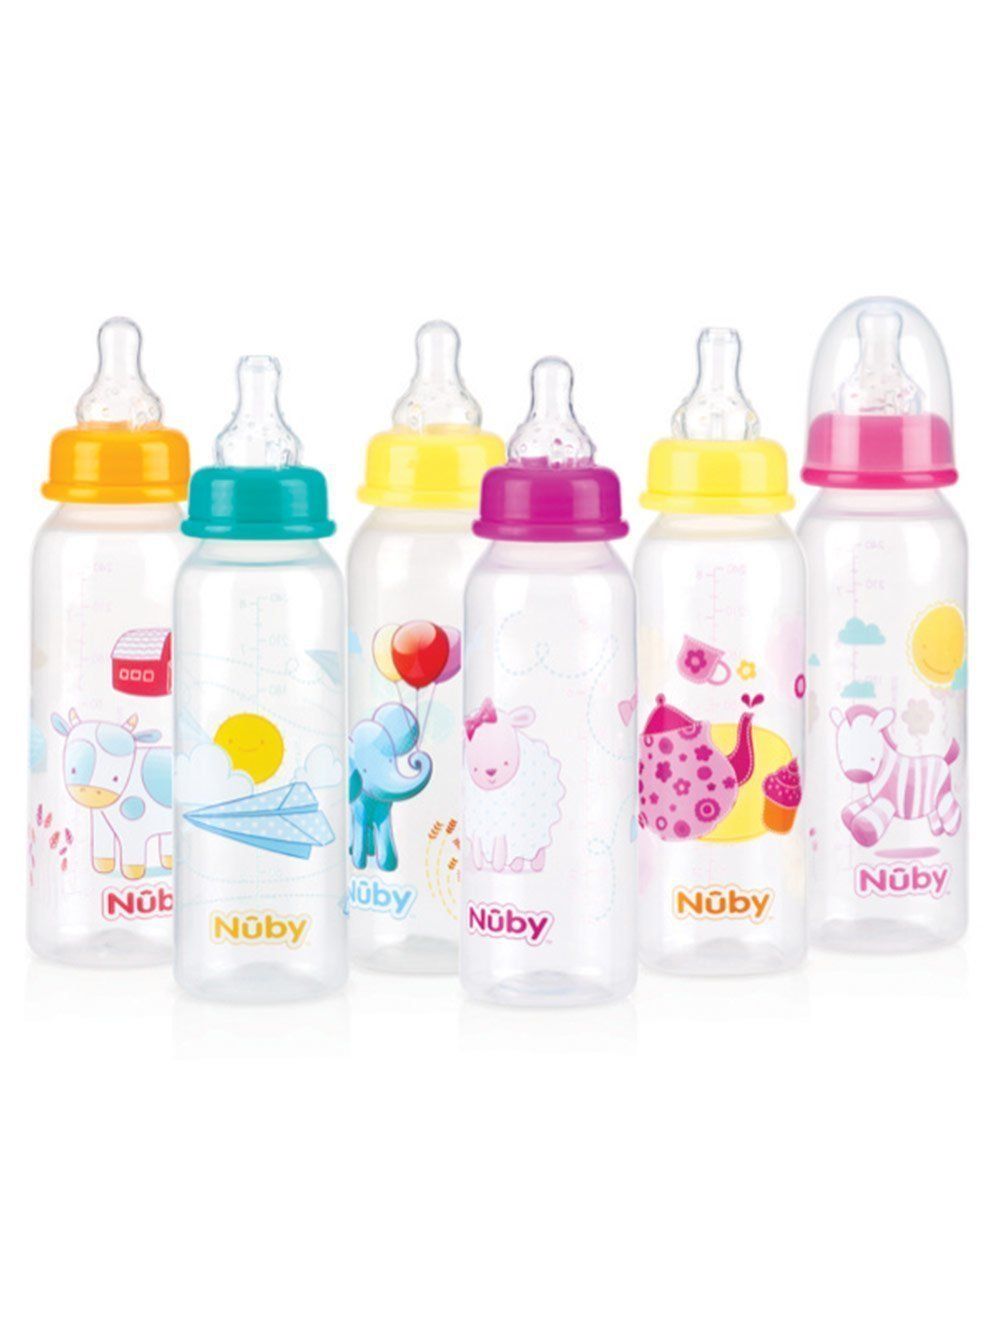 smaak Voorganger reflecteren Babyfles met opdruk en 1-2-3 speen van het merk Nuby